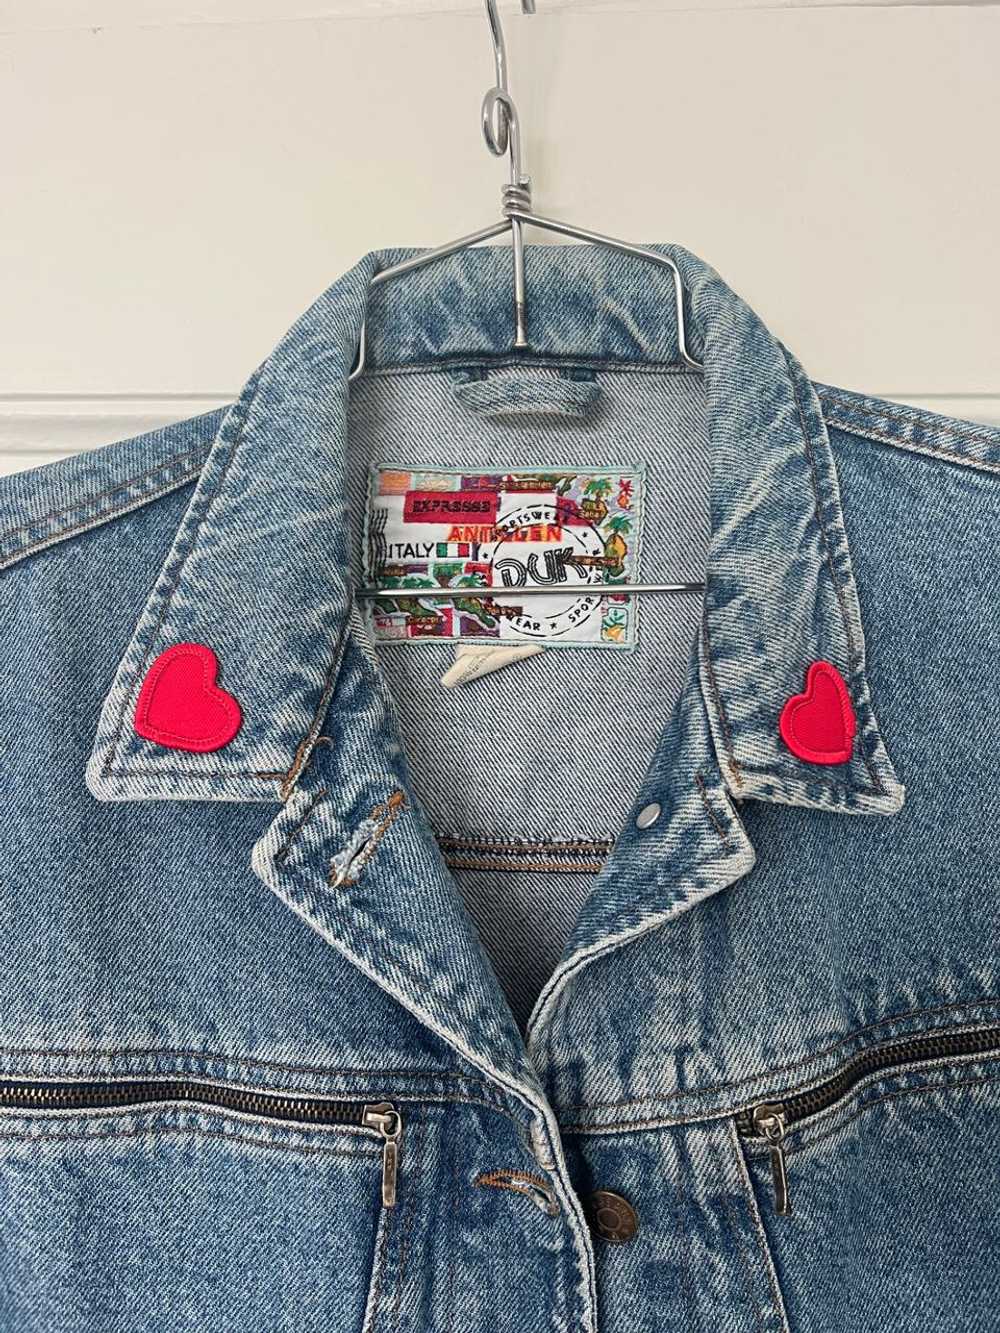 Random Vintage Italian Hearts Denim Jacket (L) |… - image 2